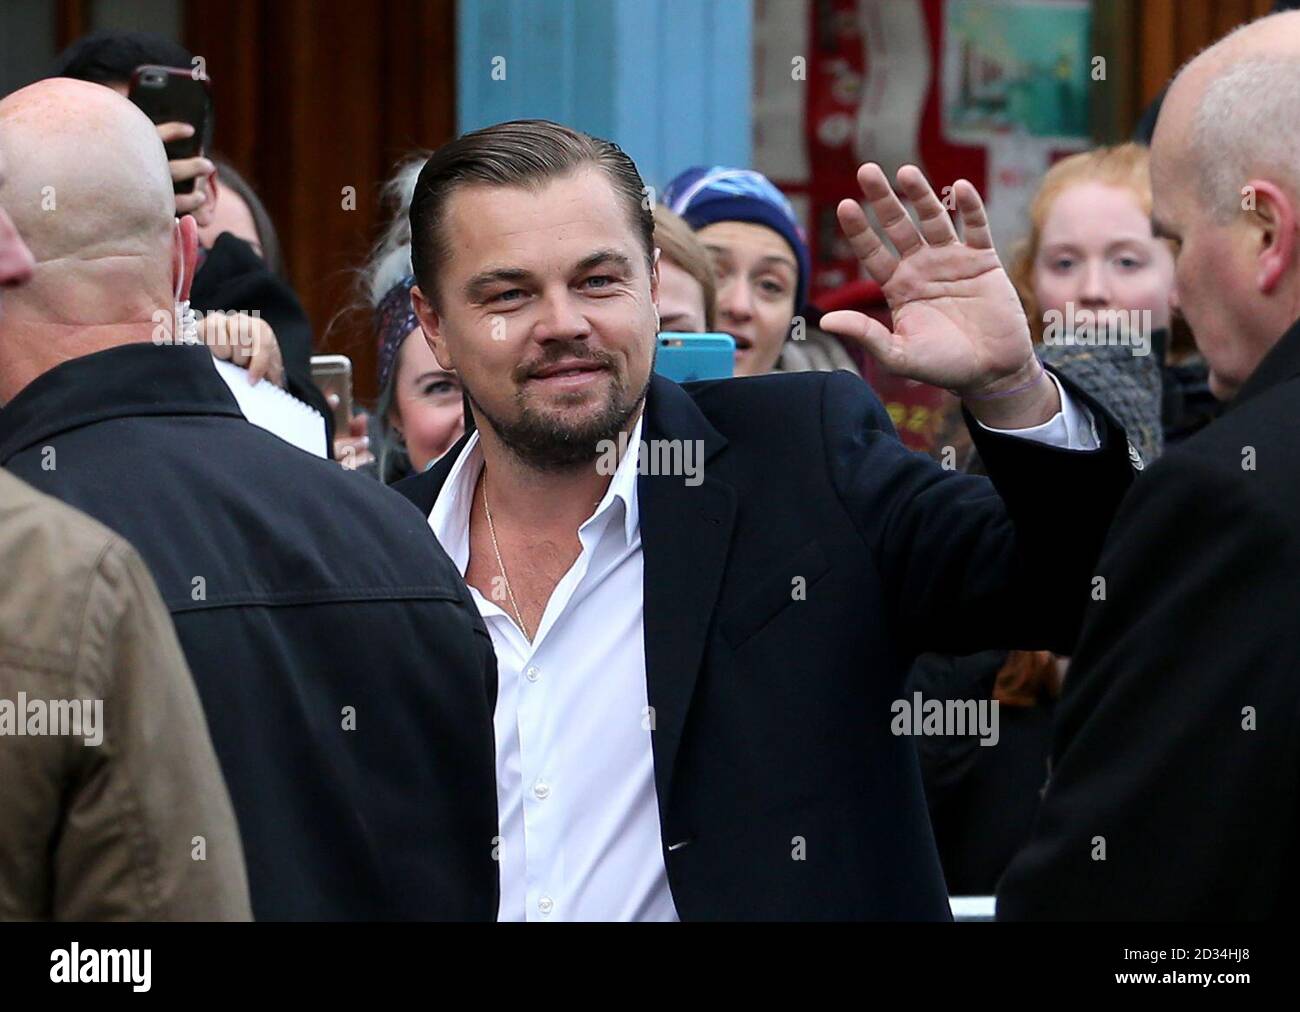 Leonardo DiCaprio arrive pour une visite à domicile par morsure sociale sandwicheries à Édimbourg, qui travaillent pour aider les sans-abri. Photo date : Jeudi 17 Novembre, 2016. Voir PA story SHOWBIZ DiCaprio. Crédit photo doit se lire : Jane Barlow/PA Wire Banque D'Images